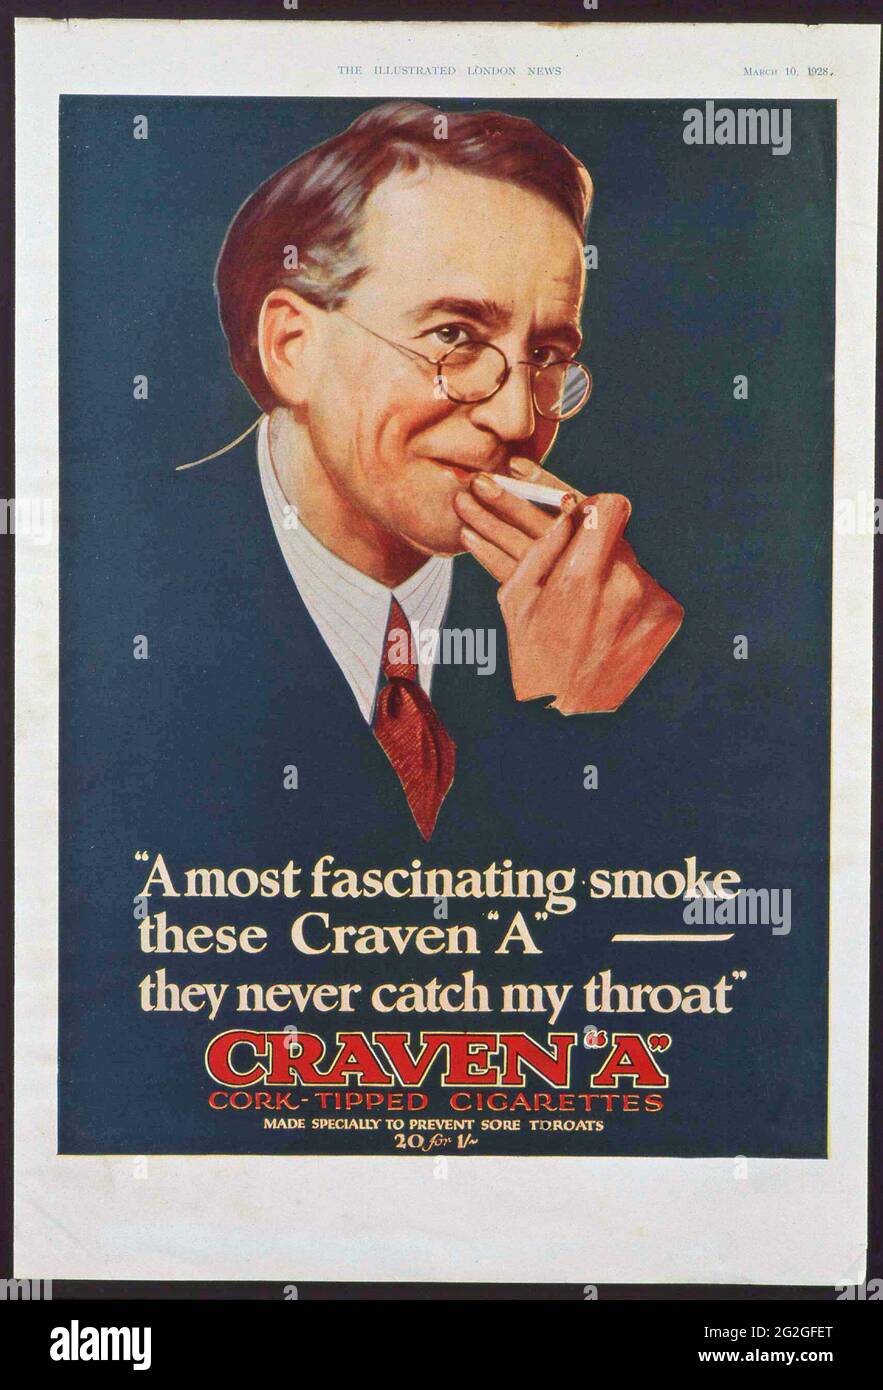 Approvazione per CRAWEN N sigarette, annata pubblicità, come visto in Illustrated London News, 10 marzo 1928. Foto Stock